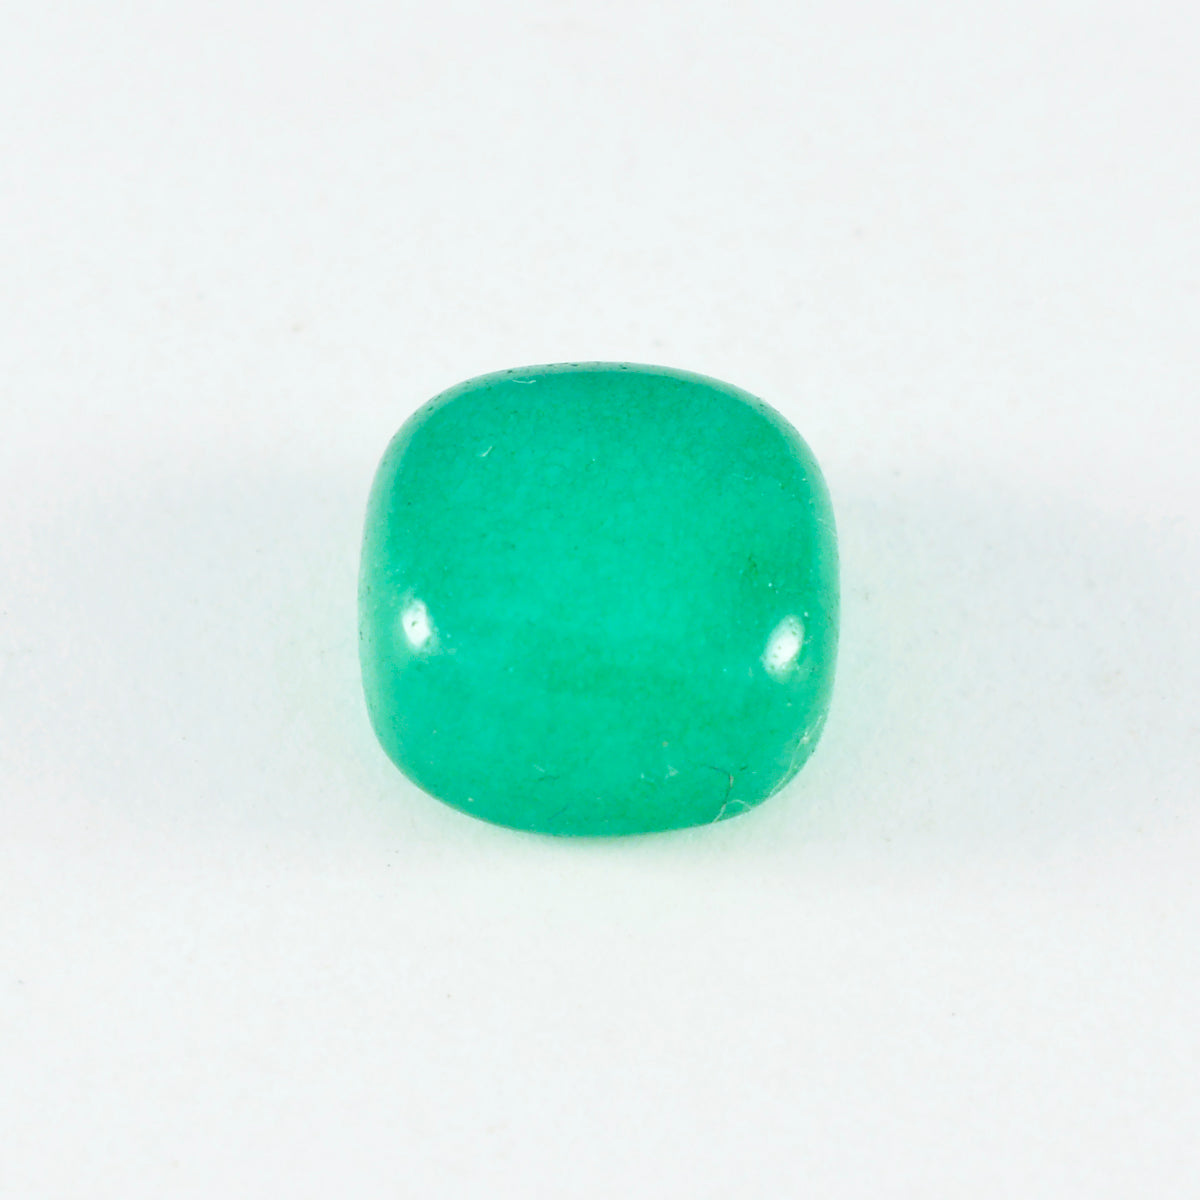 riyogems 1pc グリーン オニキス カボション 9x9 mm クッション形状 a+1 品質の宝石